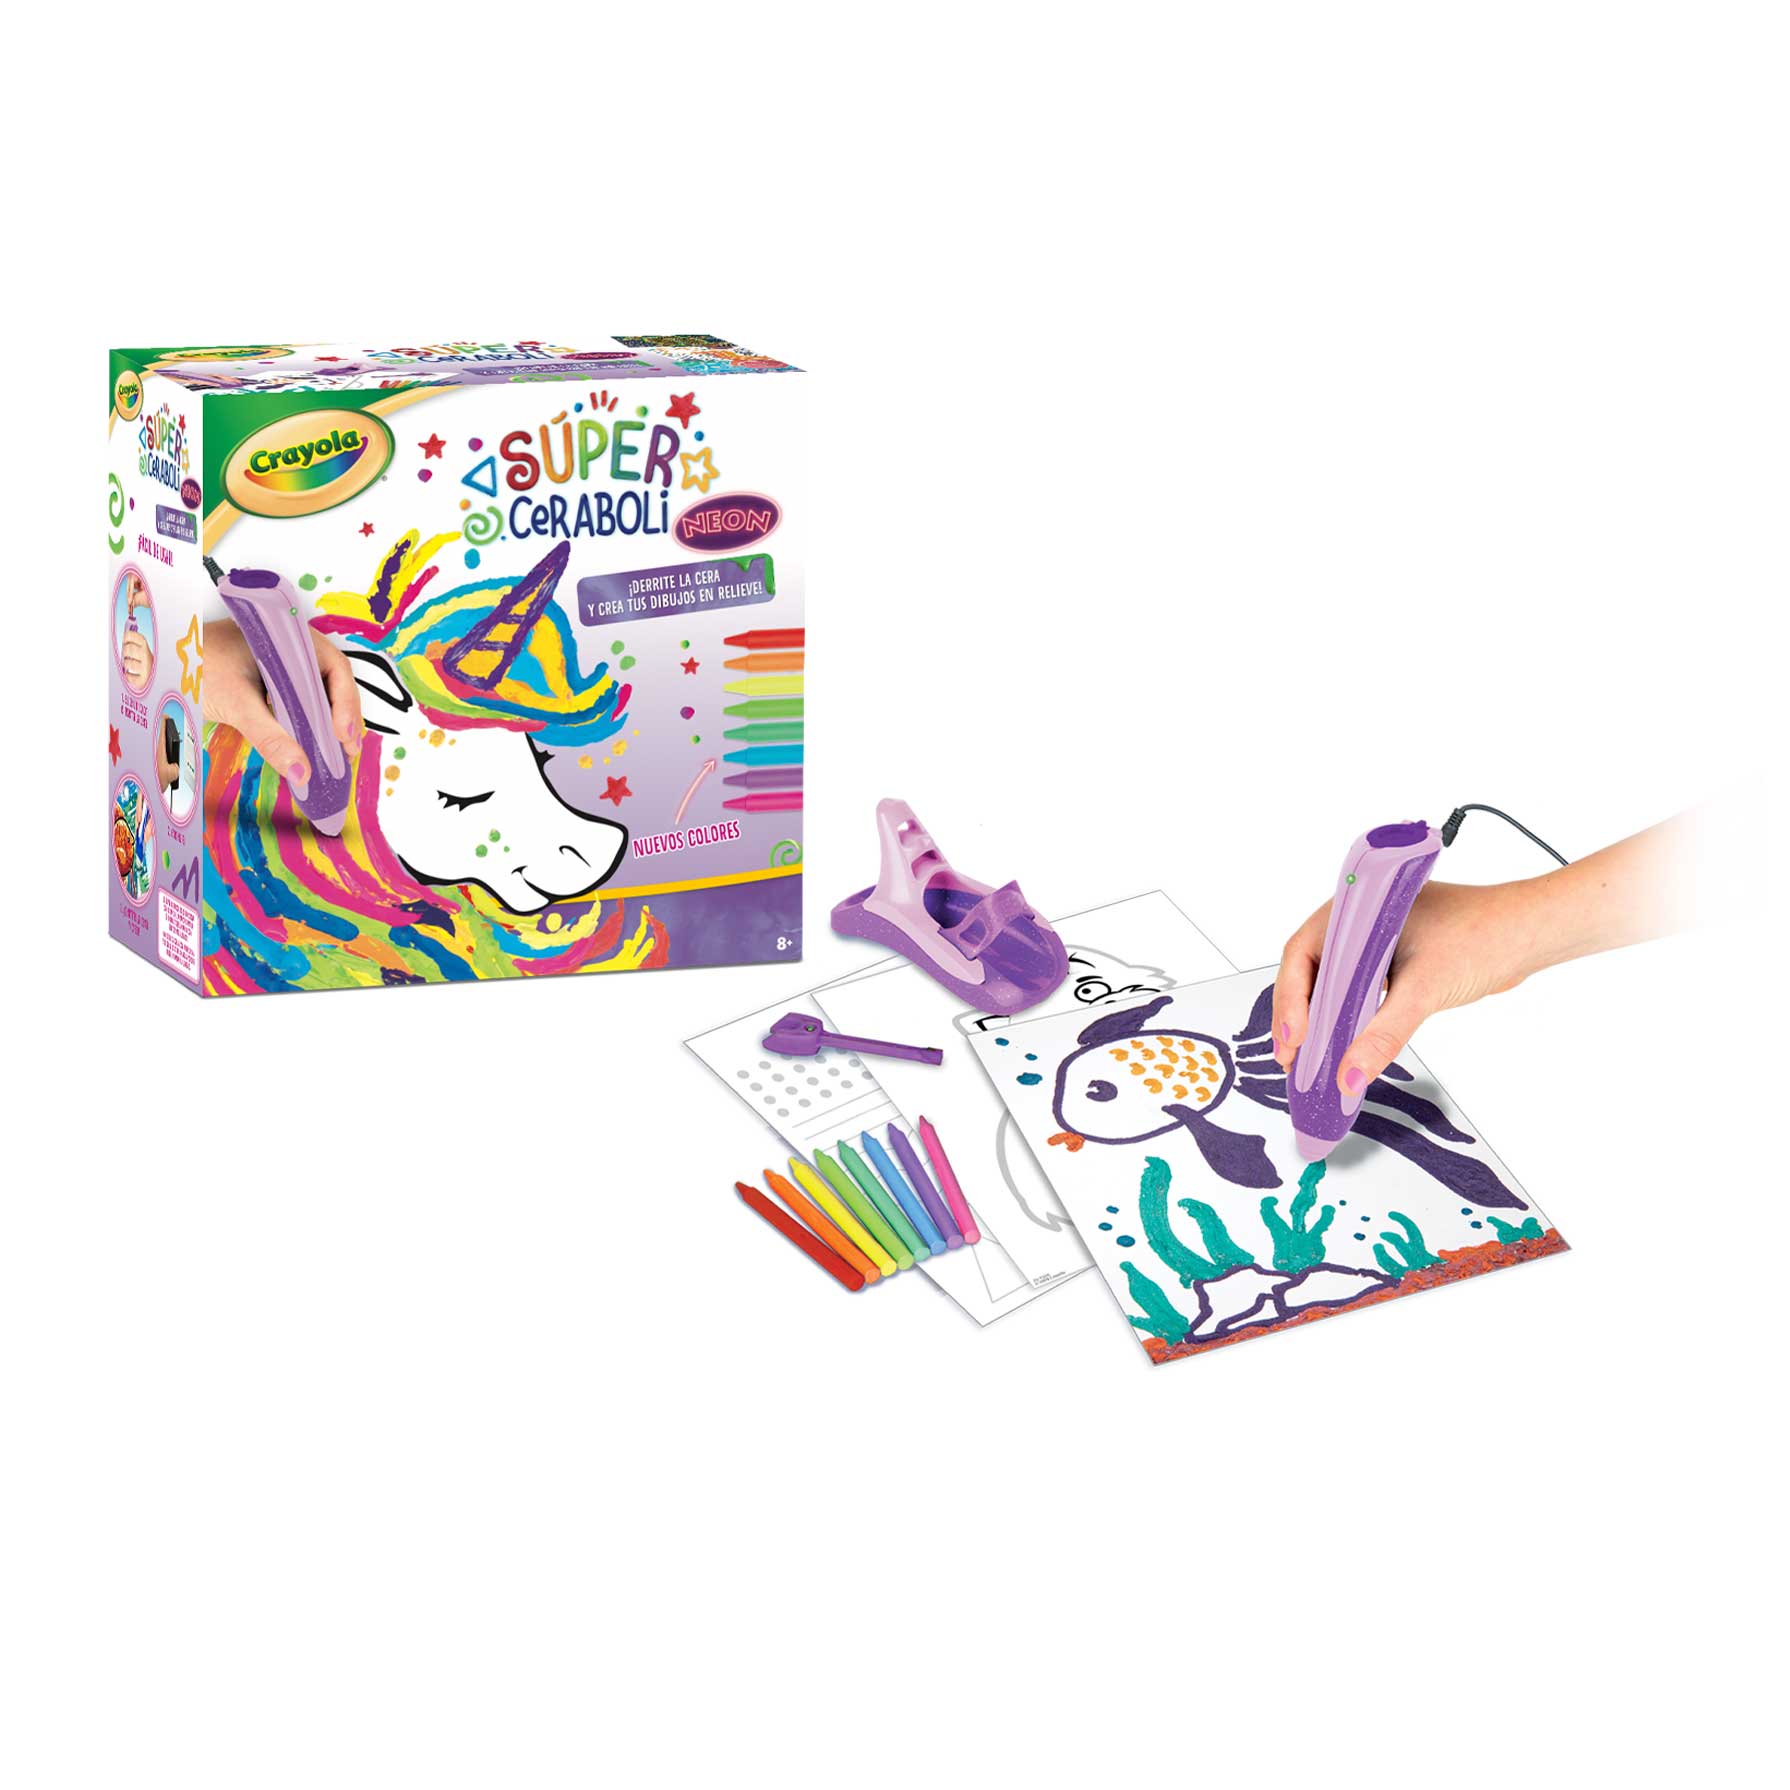 Oferta Laboratorio Rotuladores Multicolor Crayola en Toy Planet 